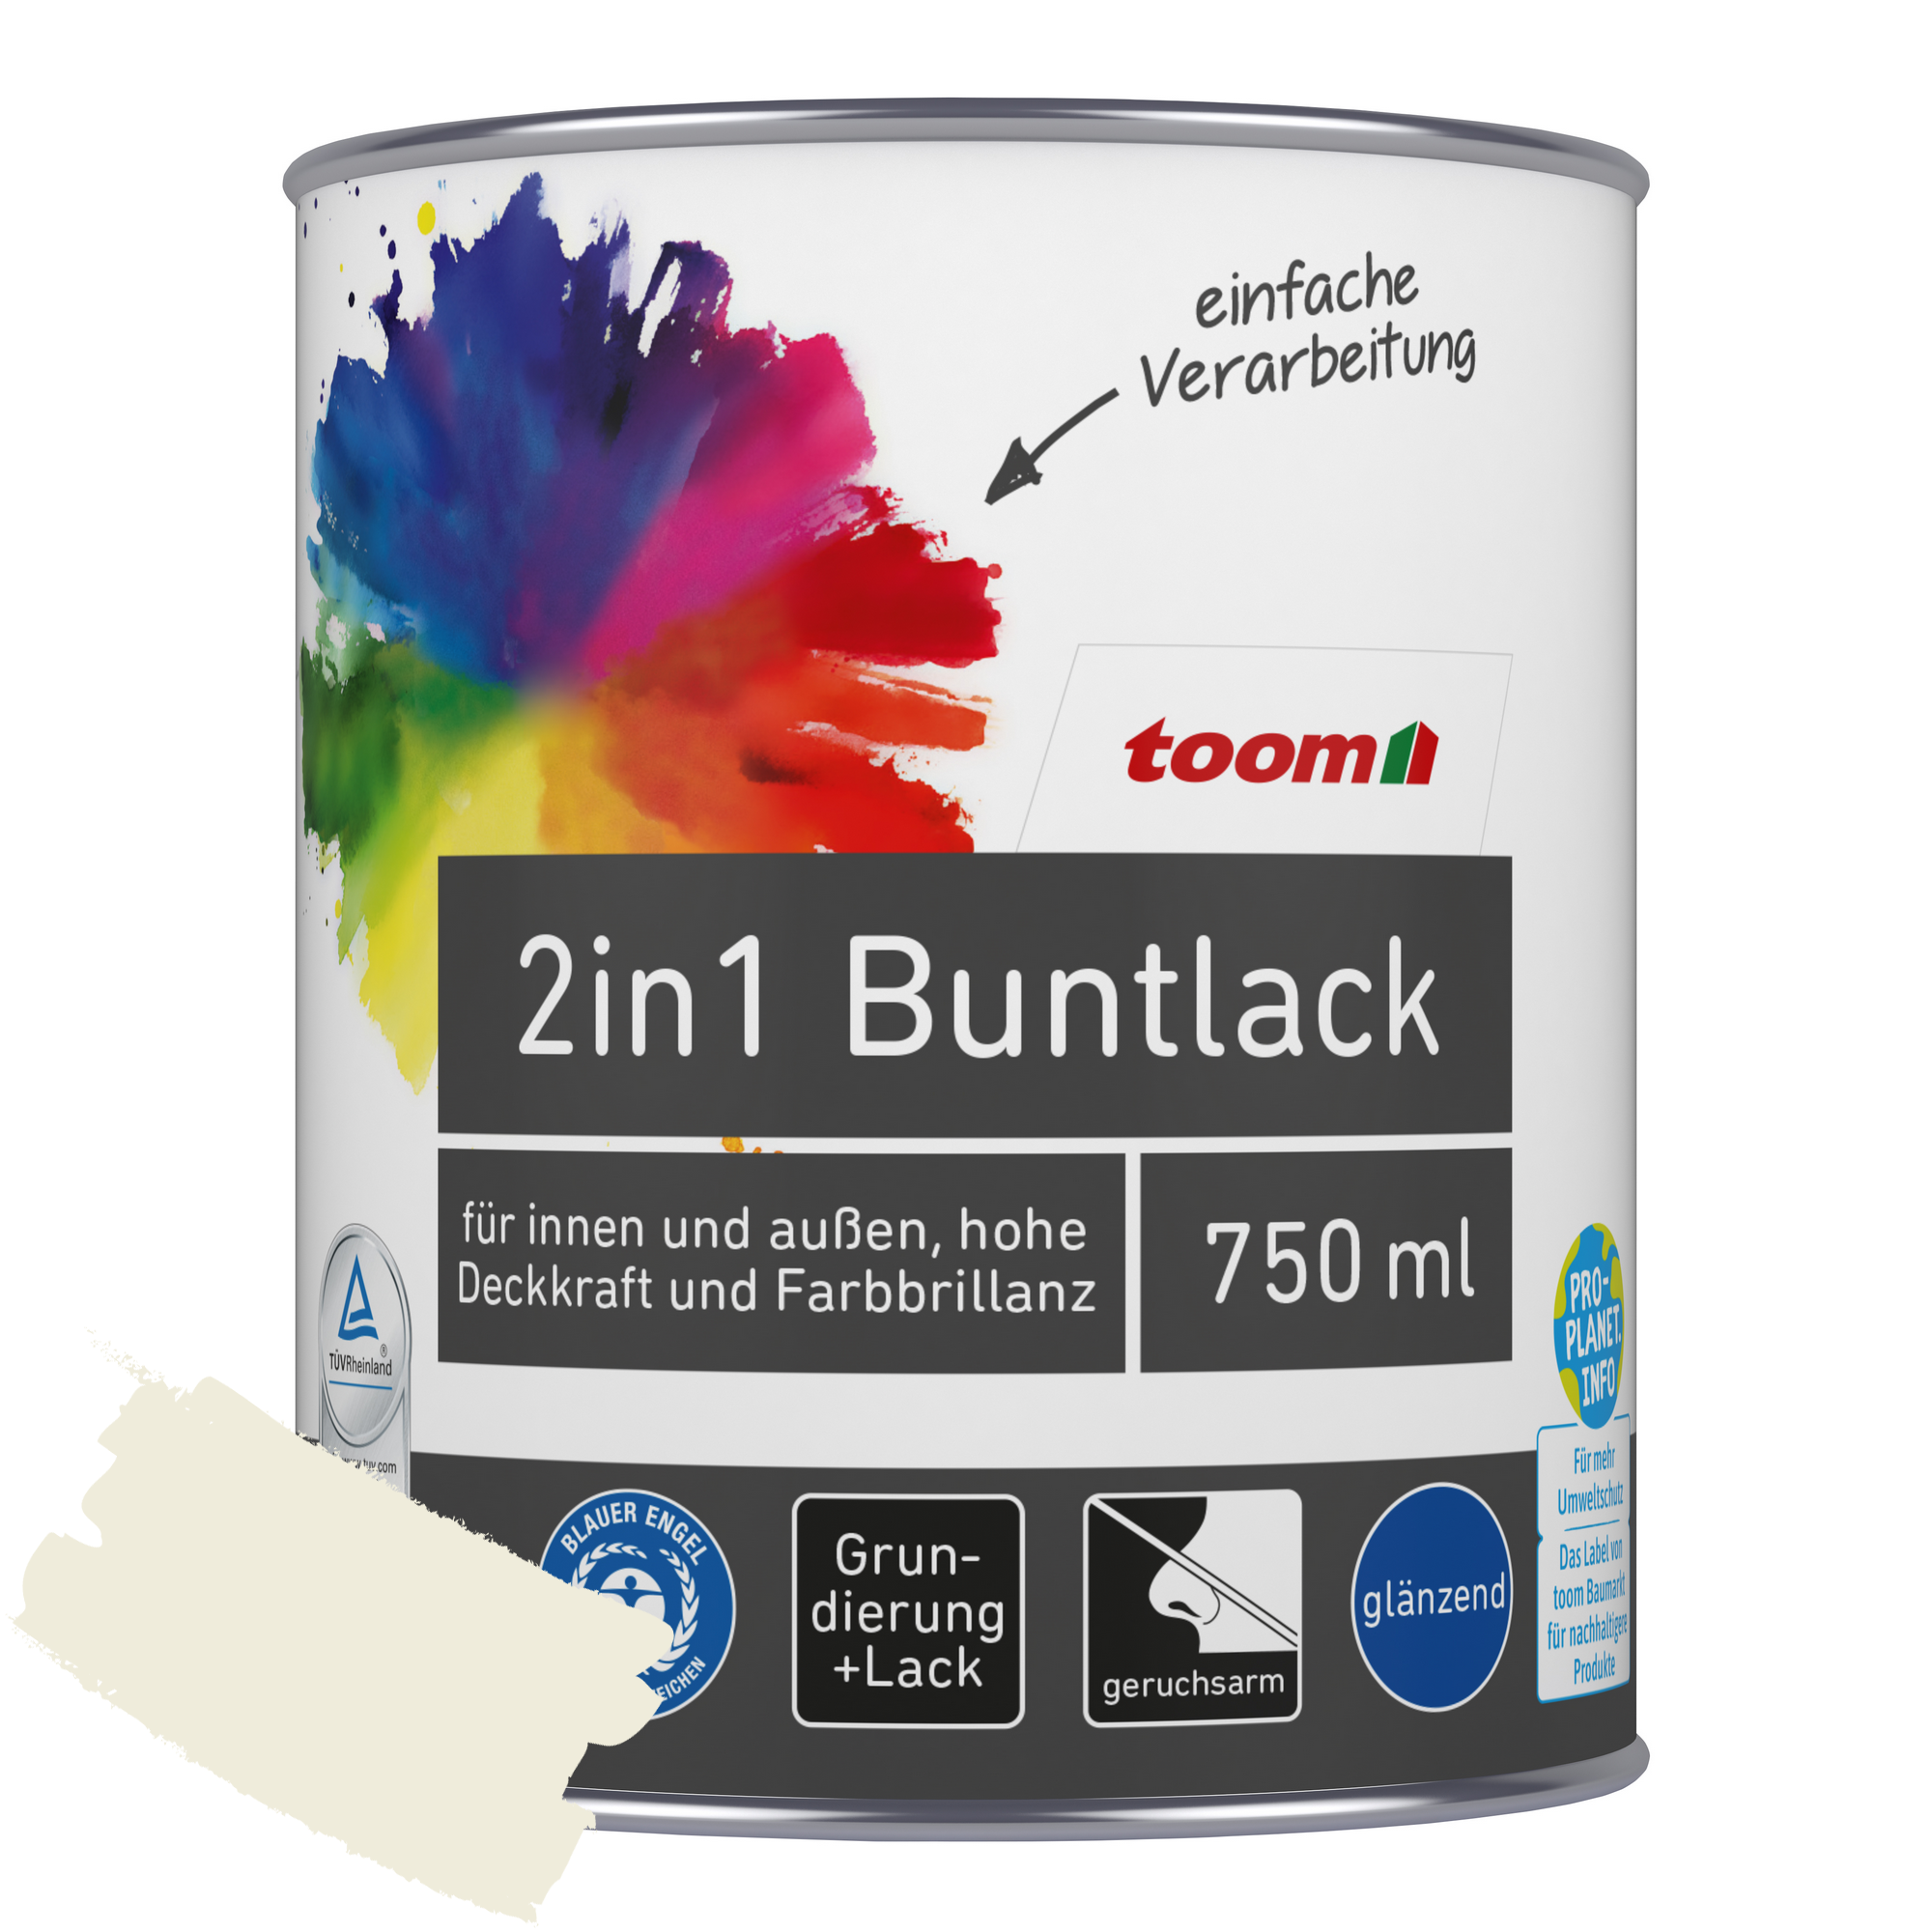 2in1 Buntlack 'Eisblume' weiß glänzend 750 ml + product picture